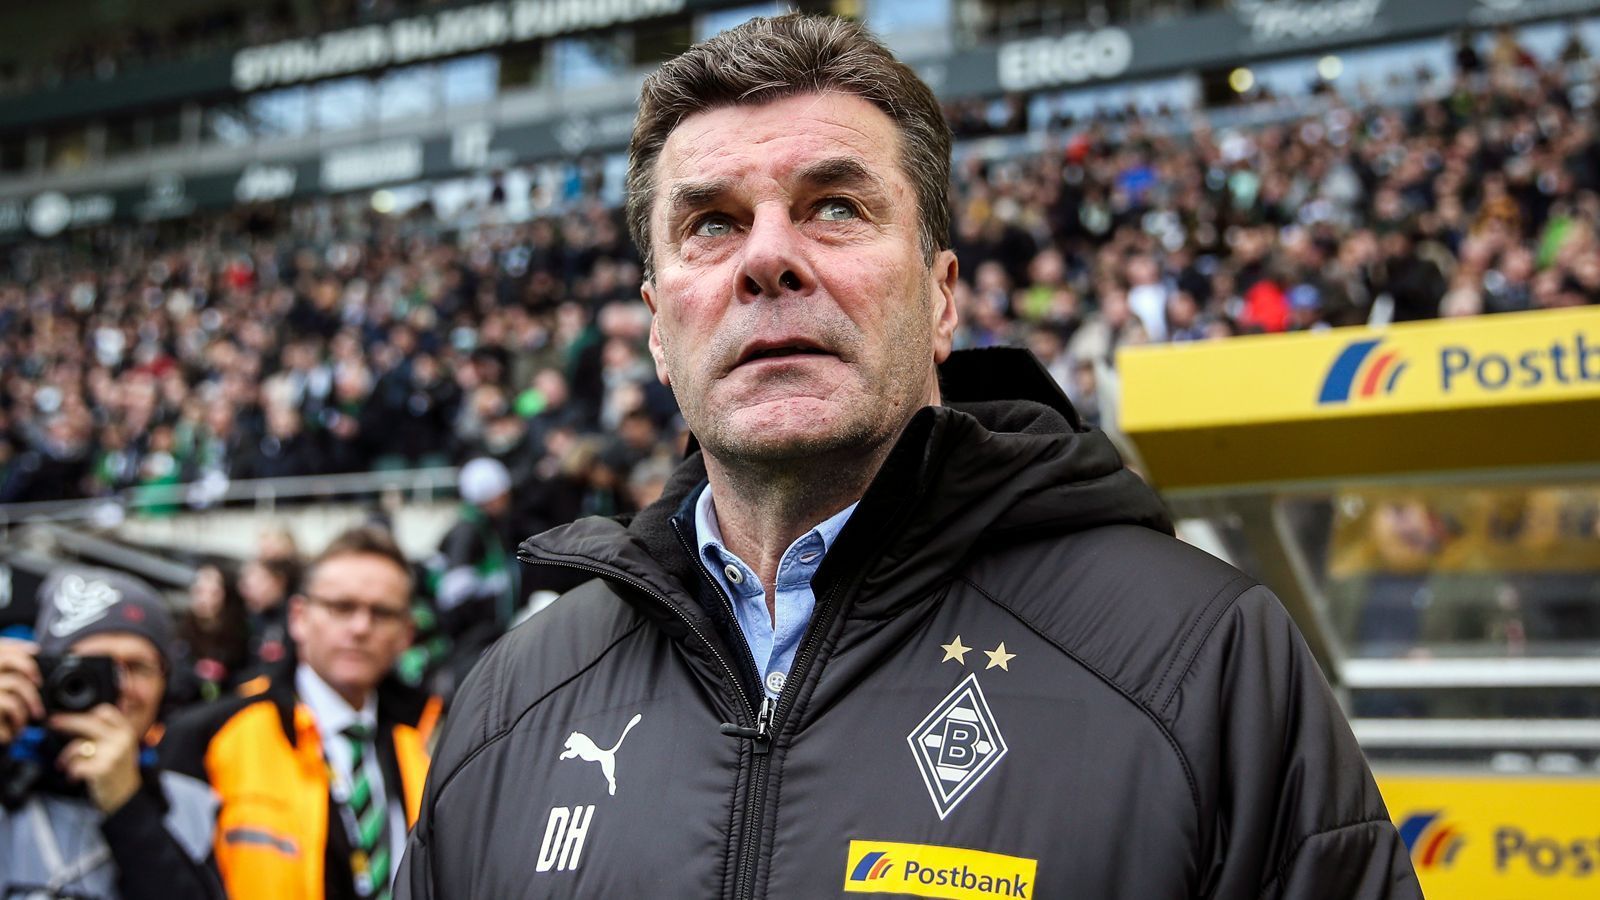 
                <strong>Platz 15 - Borussia Mönchengladbach</strong><br>
                Trainerwechsel seit 1963: 26Aktueller Trainer: Dieter HeckingIm Amt seit: Dezember 2016
              